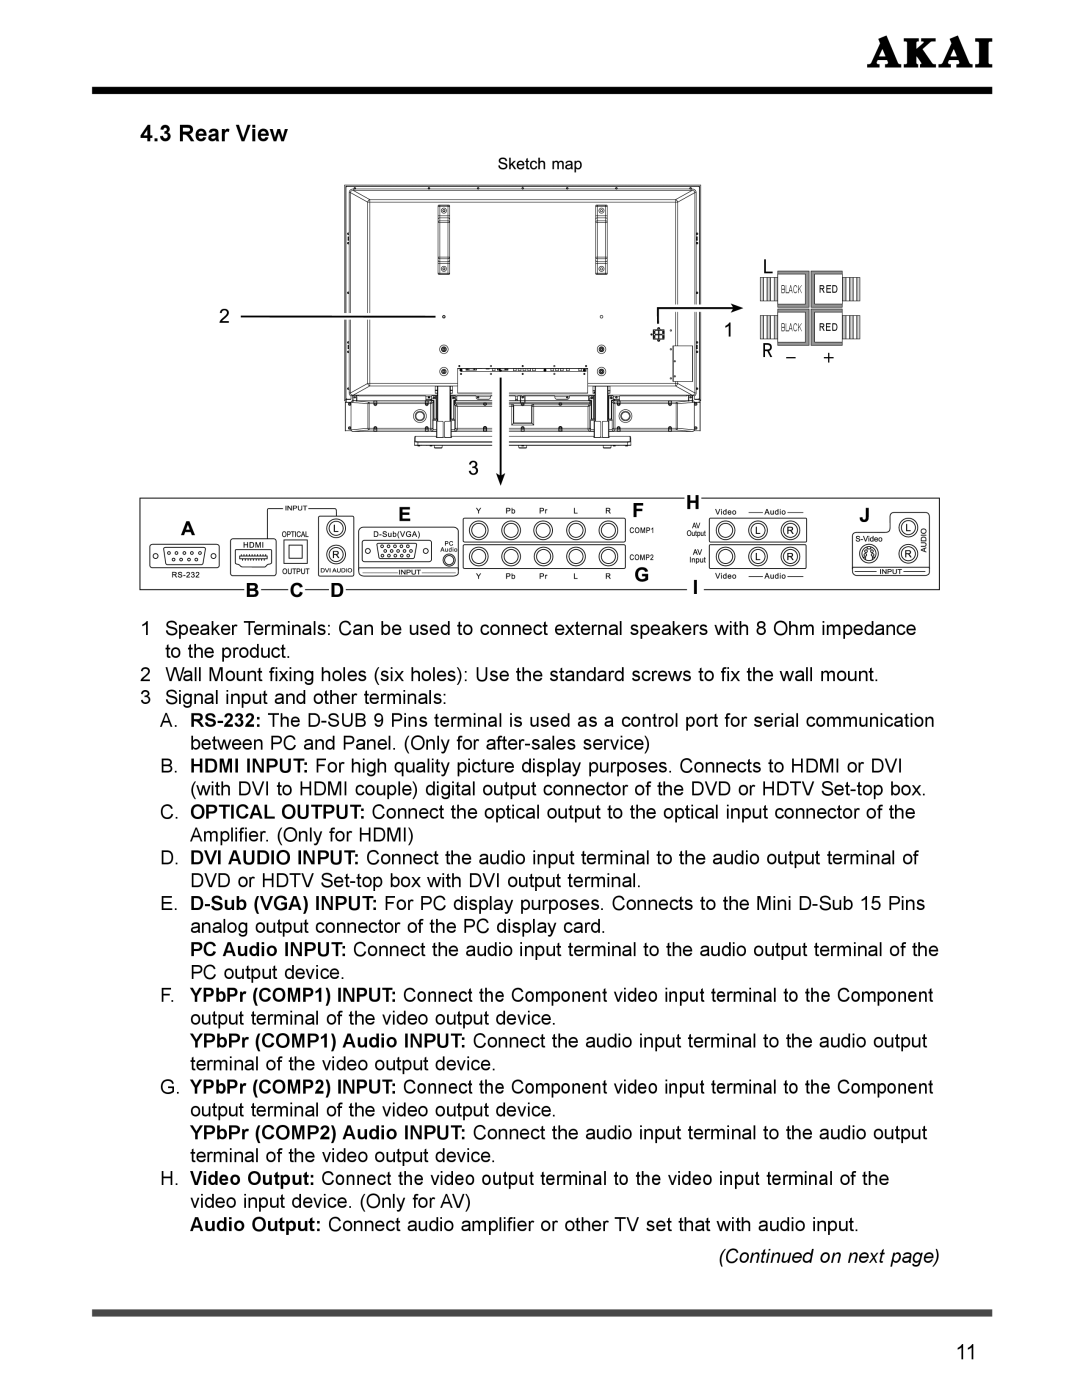 Akai PDP4273M manual Rear View, On next 